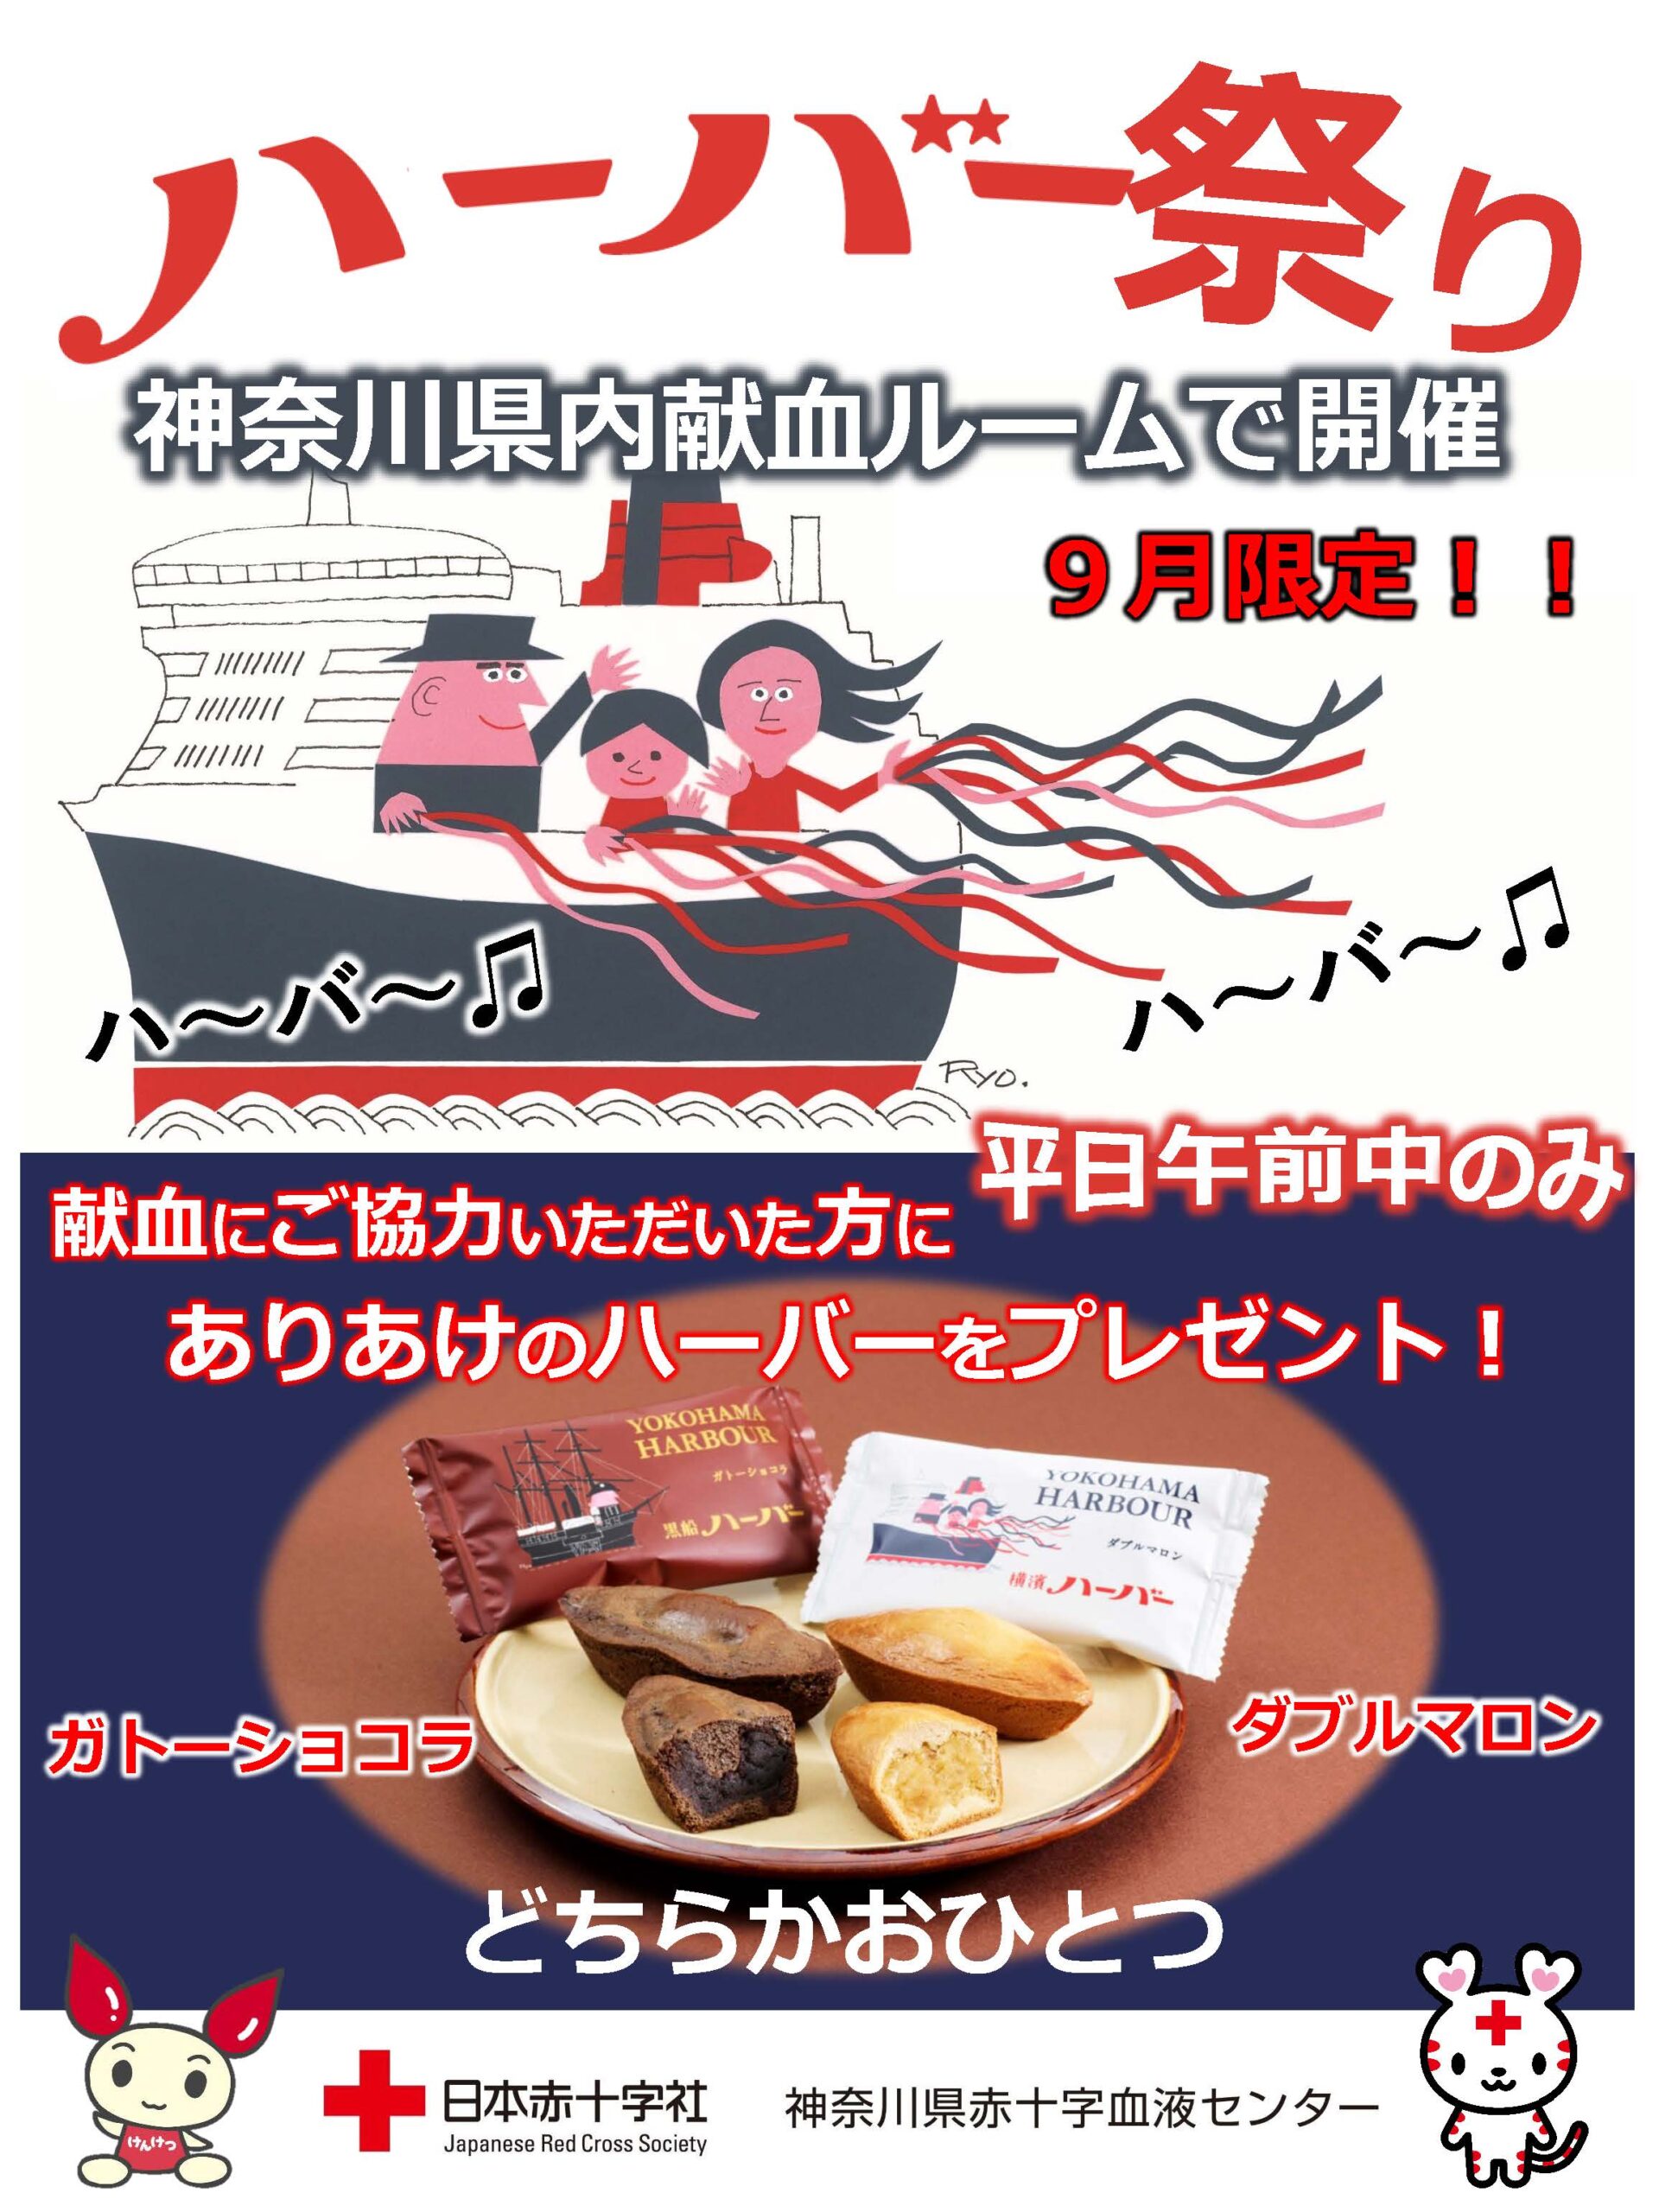 【9月限定】神奈川県赤十字血液センターでハーバーをプレゼント